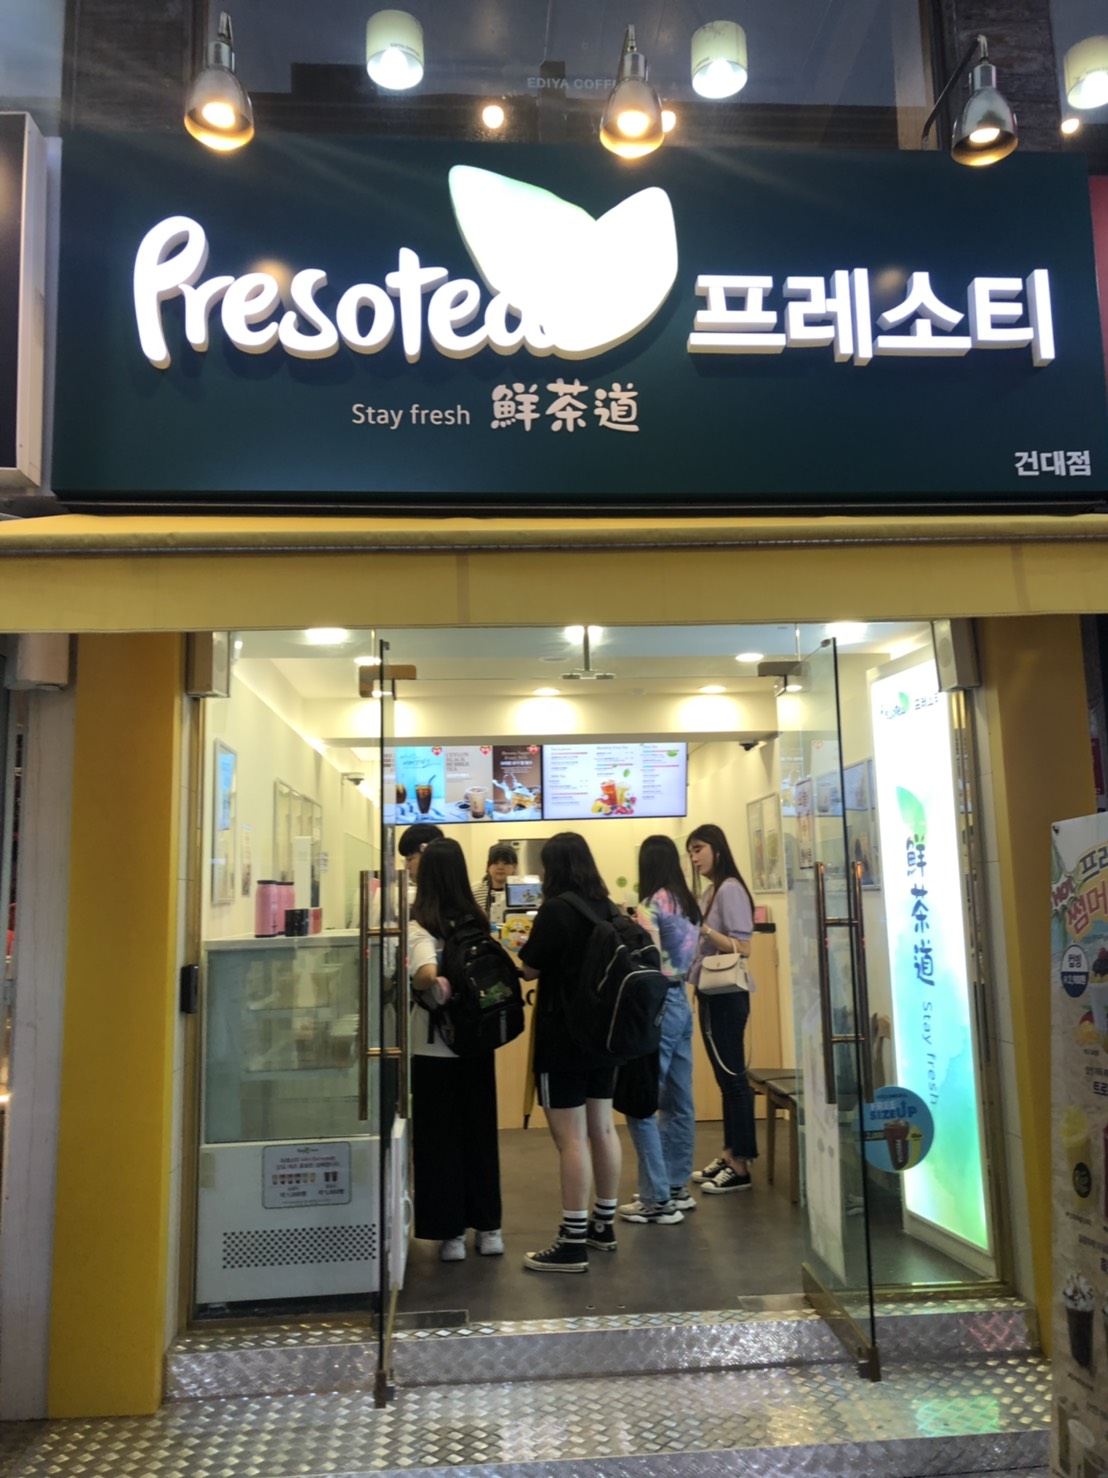 鮮茶道presotea韓國首爾二店開幕